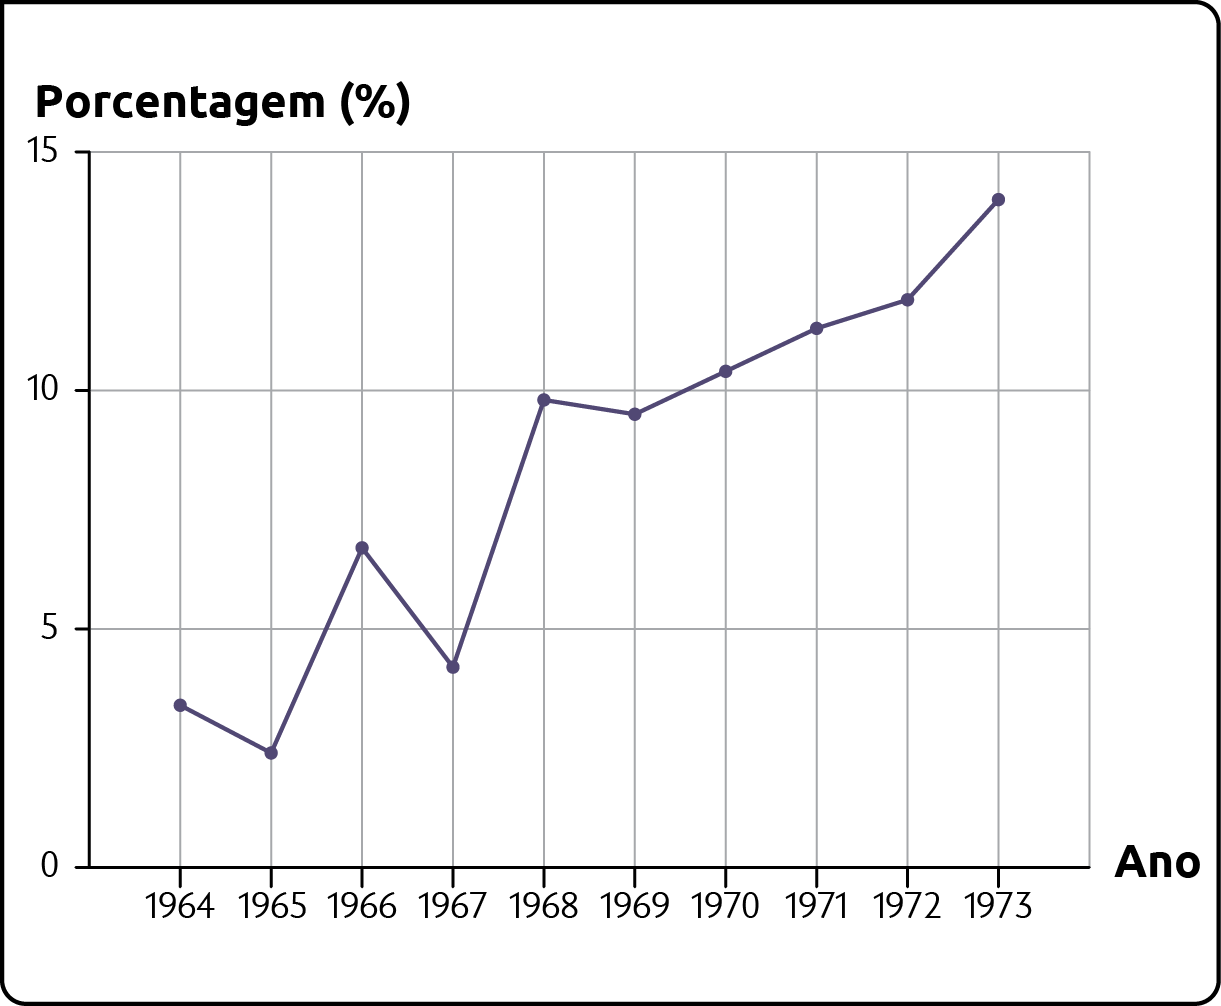 Gráfico. Crescimento do PIB brasileiro (1964-1973). Gráfico em linha, porcentagem por anos. Os dados são: 1964: Aproximadamente 4%. 1965: Aproximadamente 3%. 1966: Aproximadamente 6%. 1967: aproximadamente 4,5%. 1968: Aproximadamente 10%. 1969: Aproximadamente 9,5%. 1970: Aproximadamente 10,5%. 1971: Aproximadamente 11%. 1972: Aproximadamente 12%. 1973: Aproximadamente 14%.